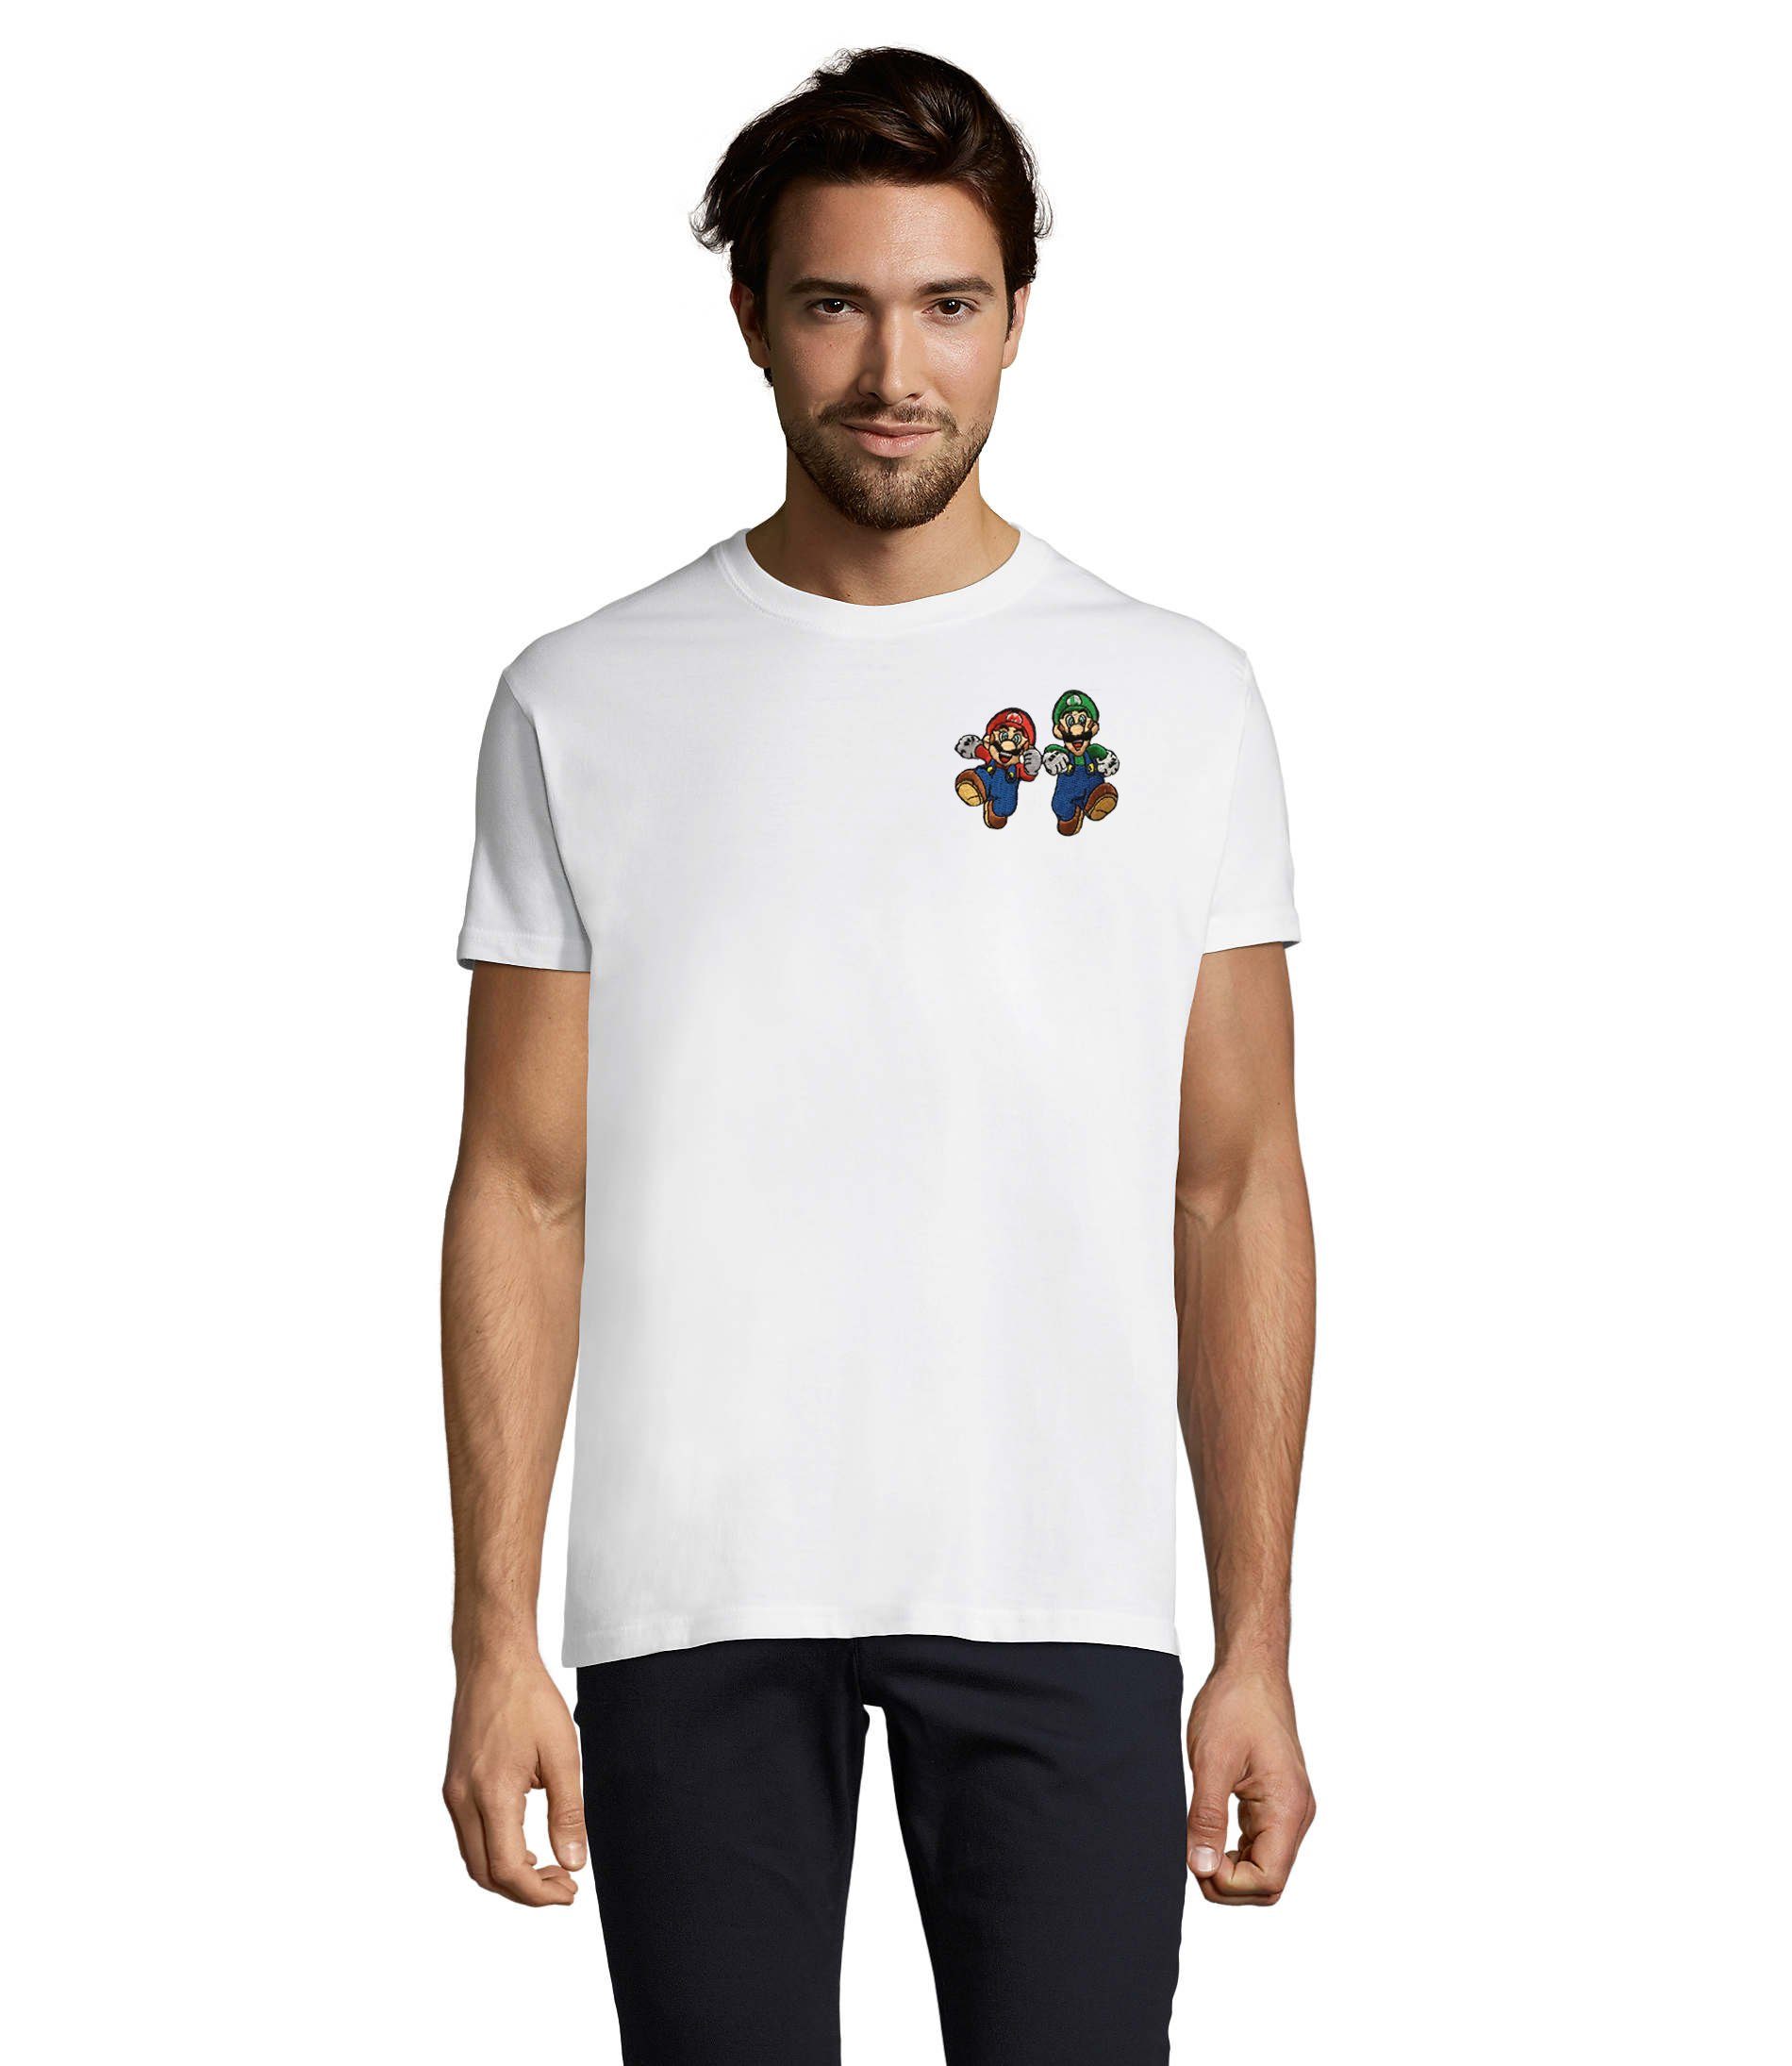 Blondie & Brownie T-Shirt Herren Mario & Luigi Brust Stick Peach Konsole Nintendo Gaming bestickt Weiß